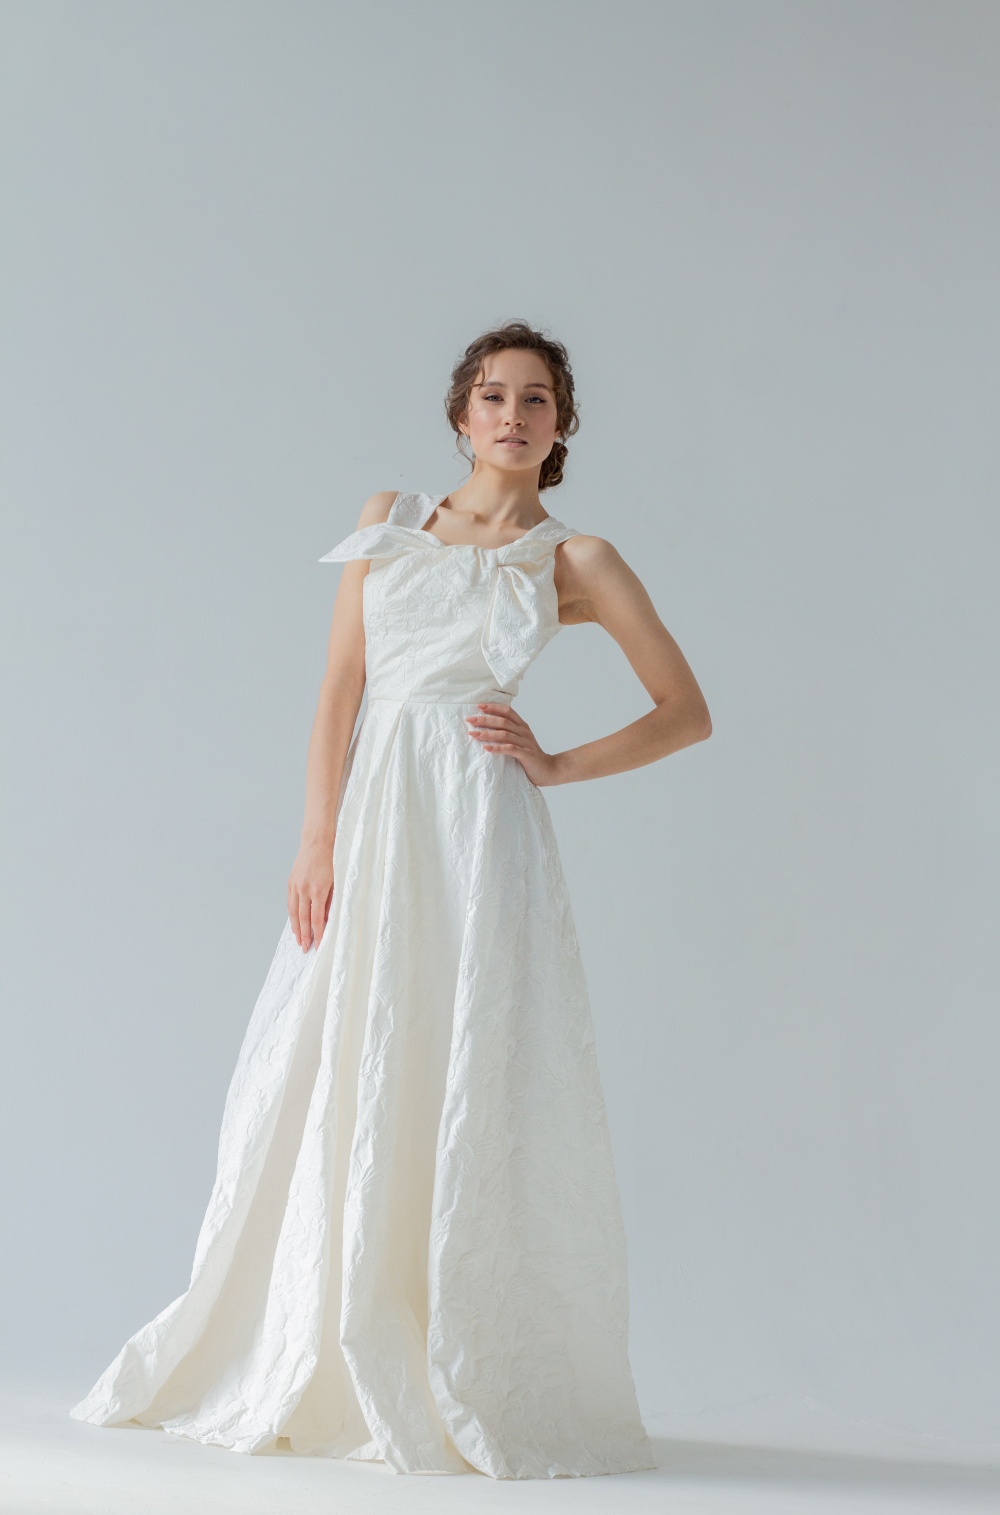 Свадебное платье из мягкой тафты с фактурными цветами, приталенный силуэт украшает бант на груди. Торжественный и лаконичный образ невесты. Размер 42-44.